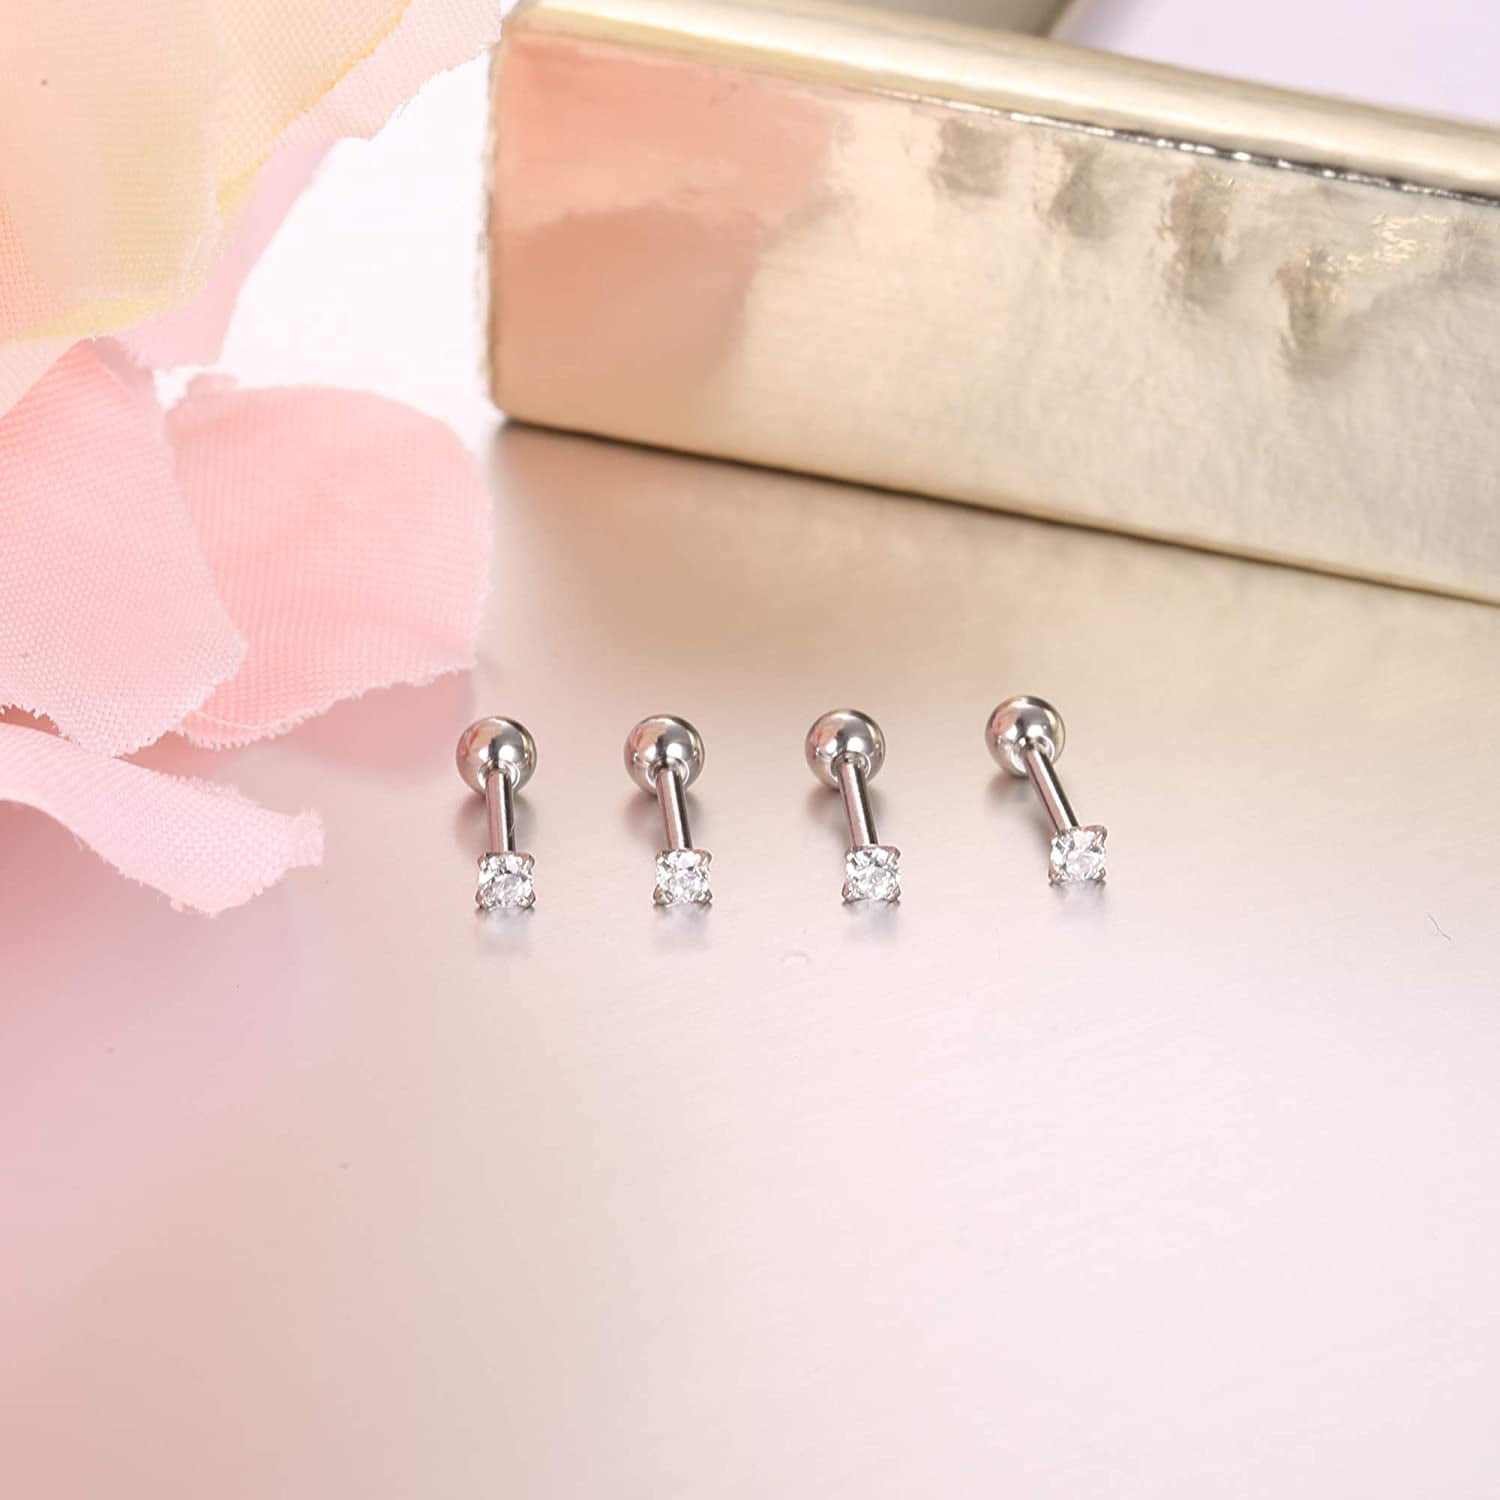 JStyle 24pairs Hypoallergenic Screw Back Earrings for Girls Women Surgical Steel Tiny Heart Flower Flat Back Stud Earrings Cute Earrings Jewelry Set